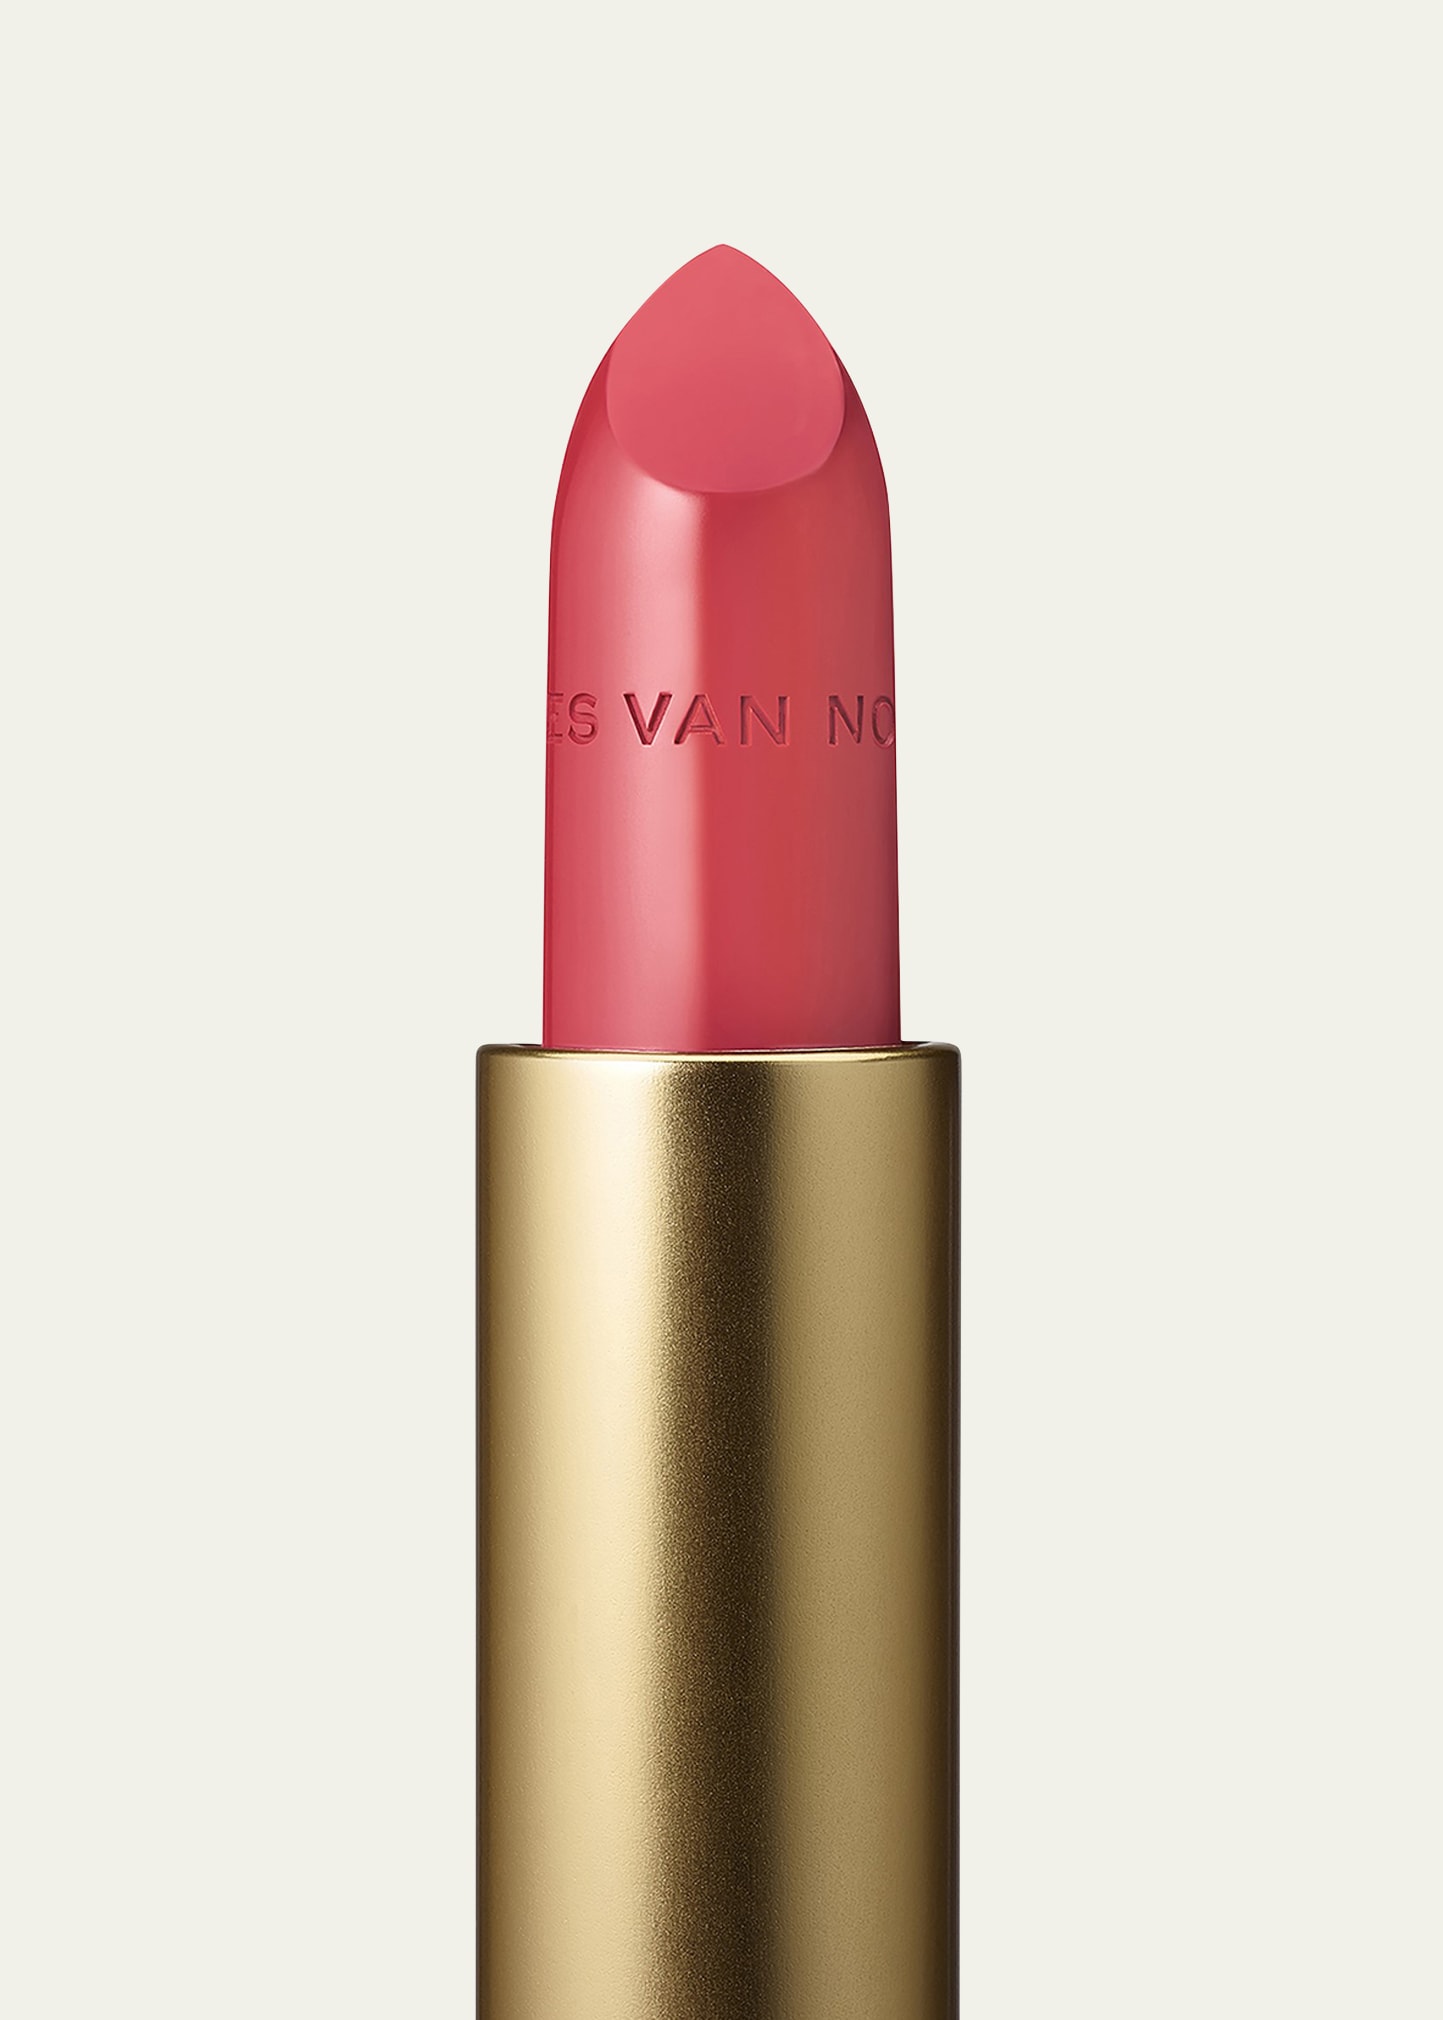 Dries Van Noten Satin Lipstick Refill In 60 Revised Pink